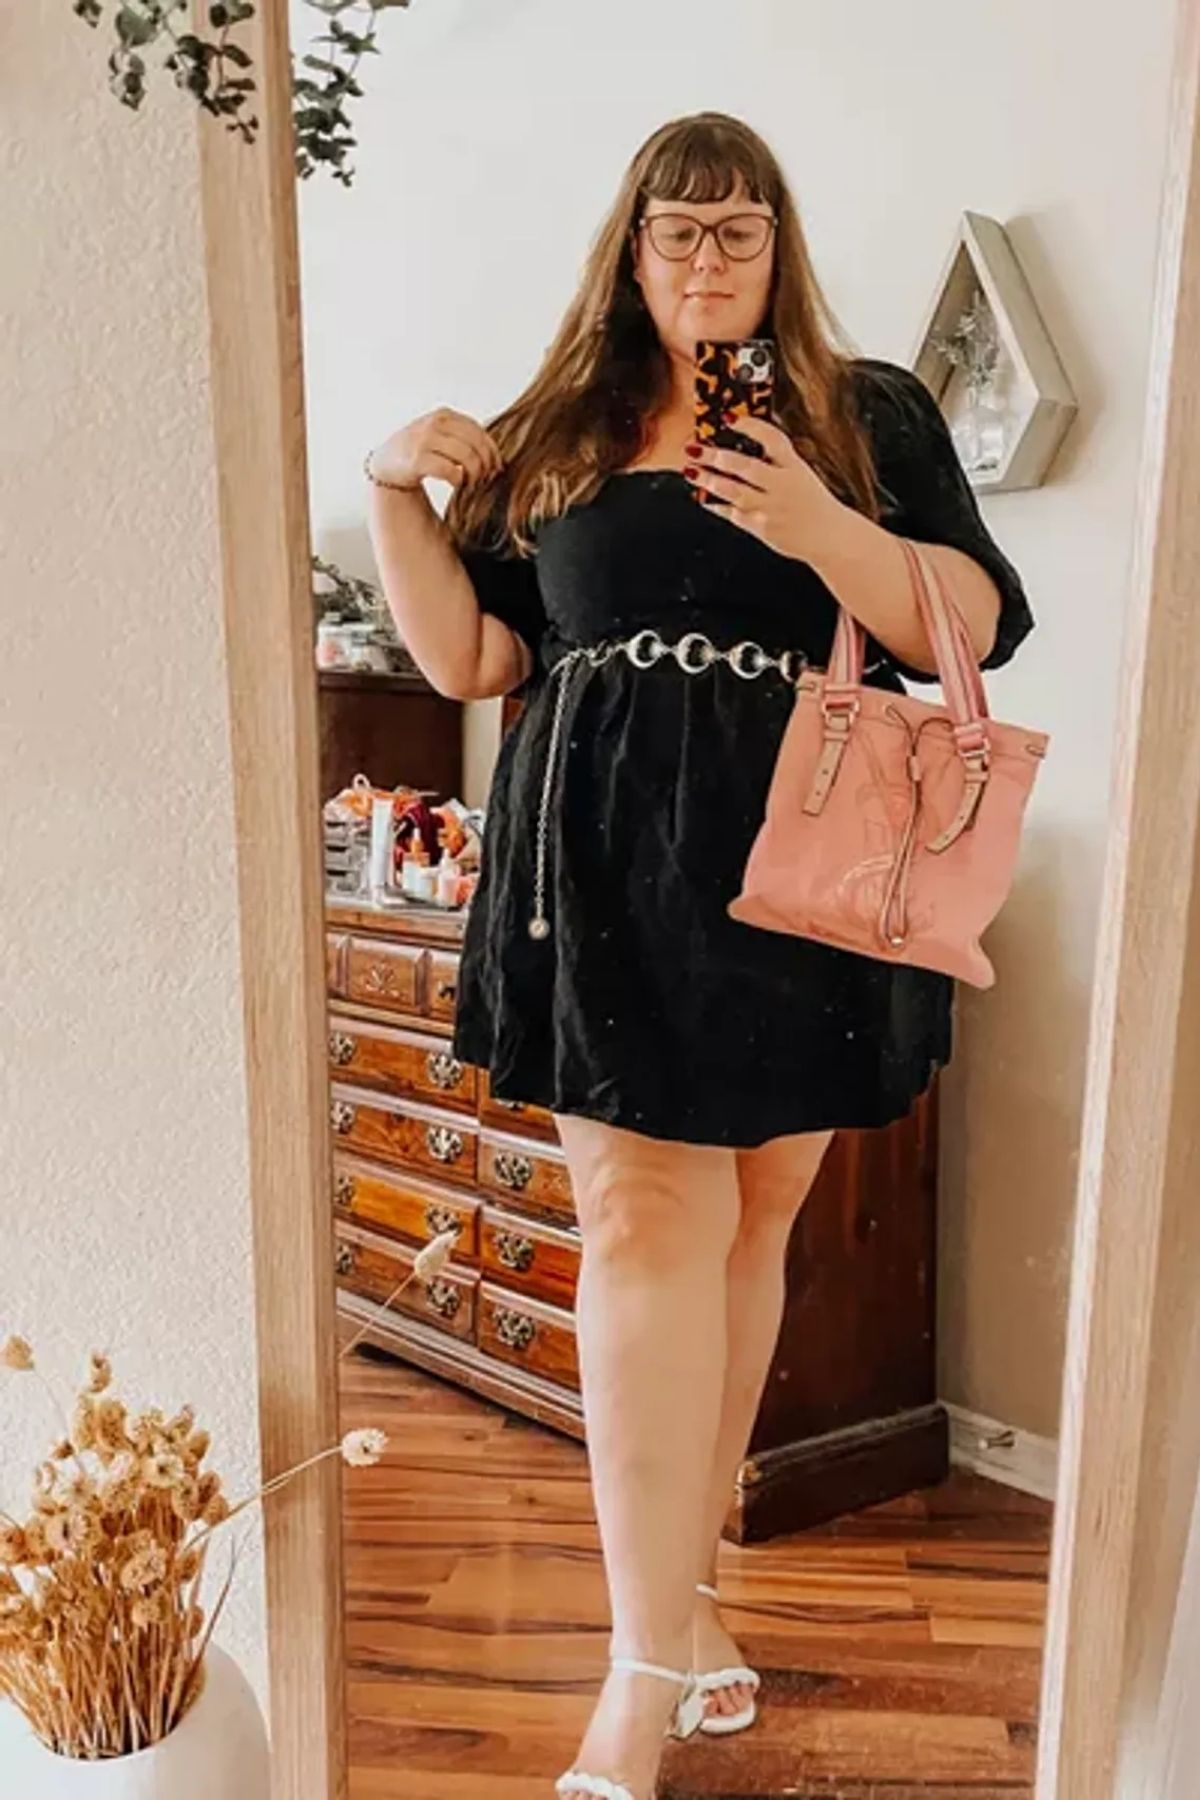 Off-the-shoulder black dress, cinched waist, pink handbag, white sandals.